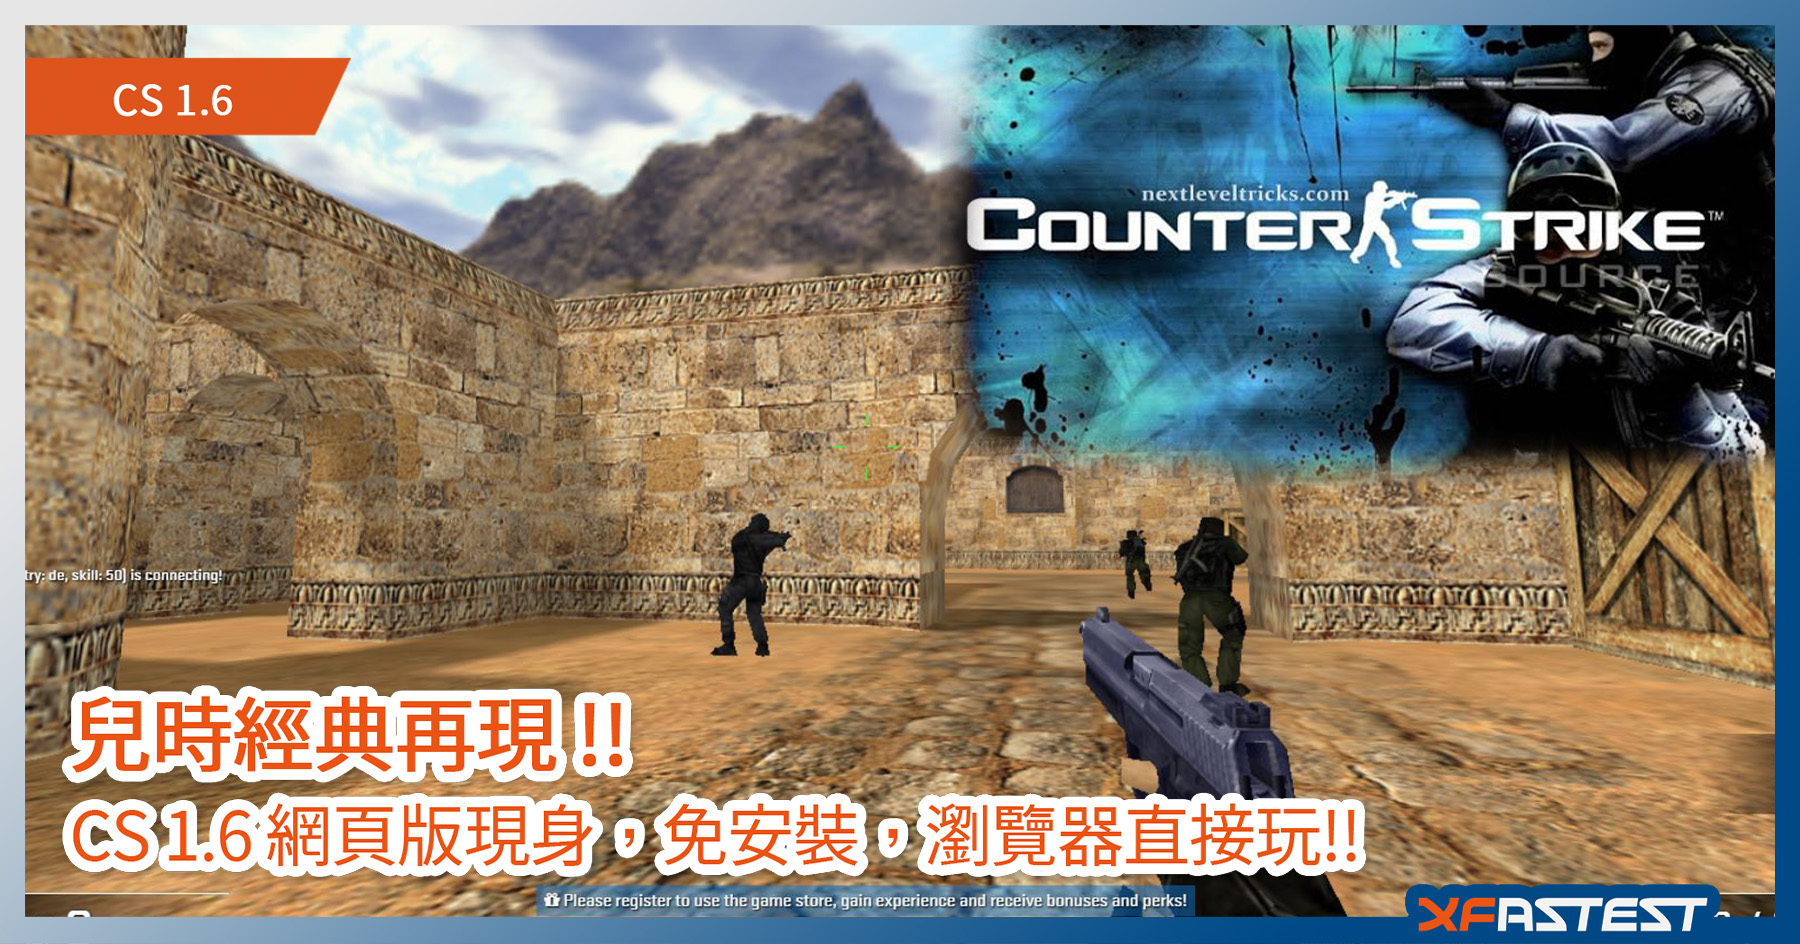 經典槍game 重現 Cs 1 6 推出網頁版 瀏覽器直玩免安裝 立即回味從前 Xfastest Hong Kong